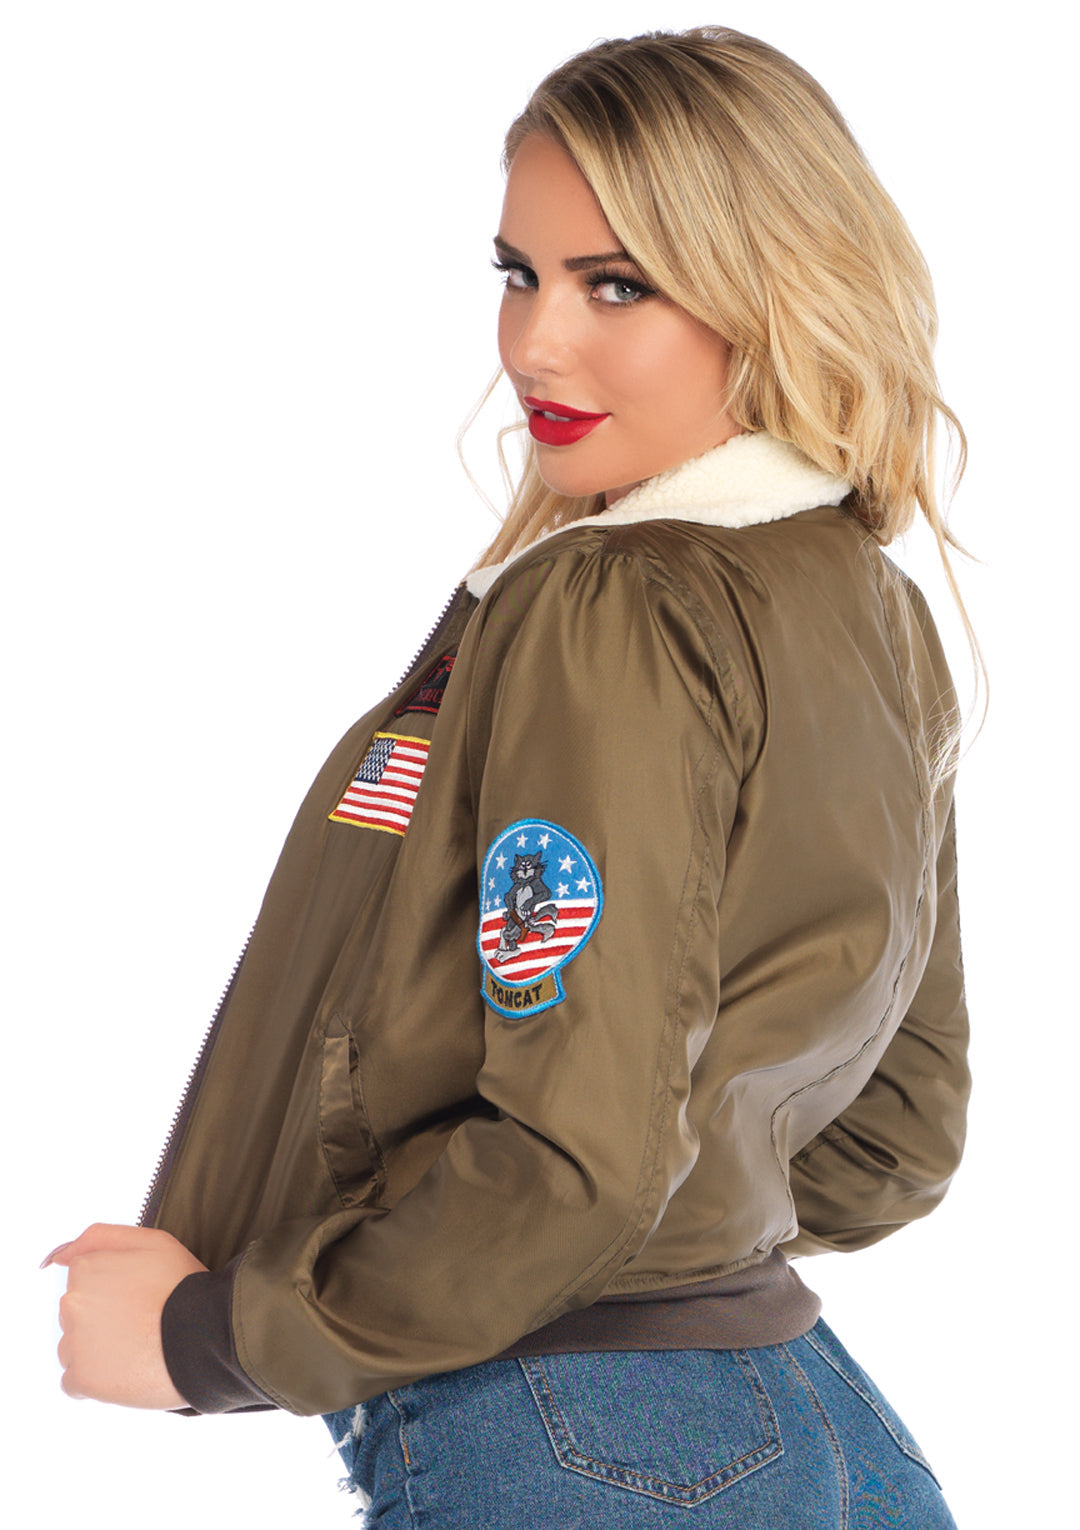 Top Gun women's nylon bomber